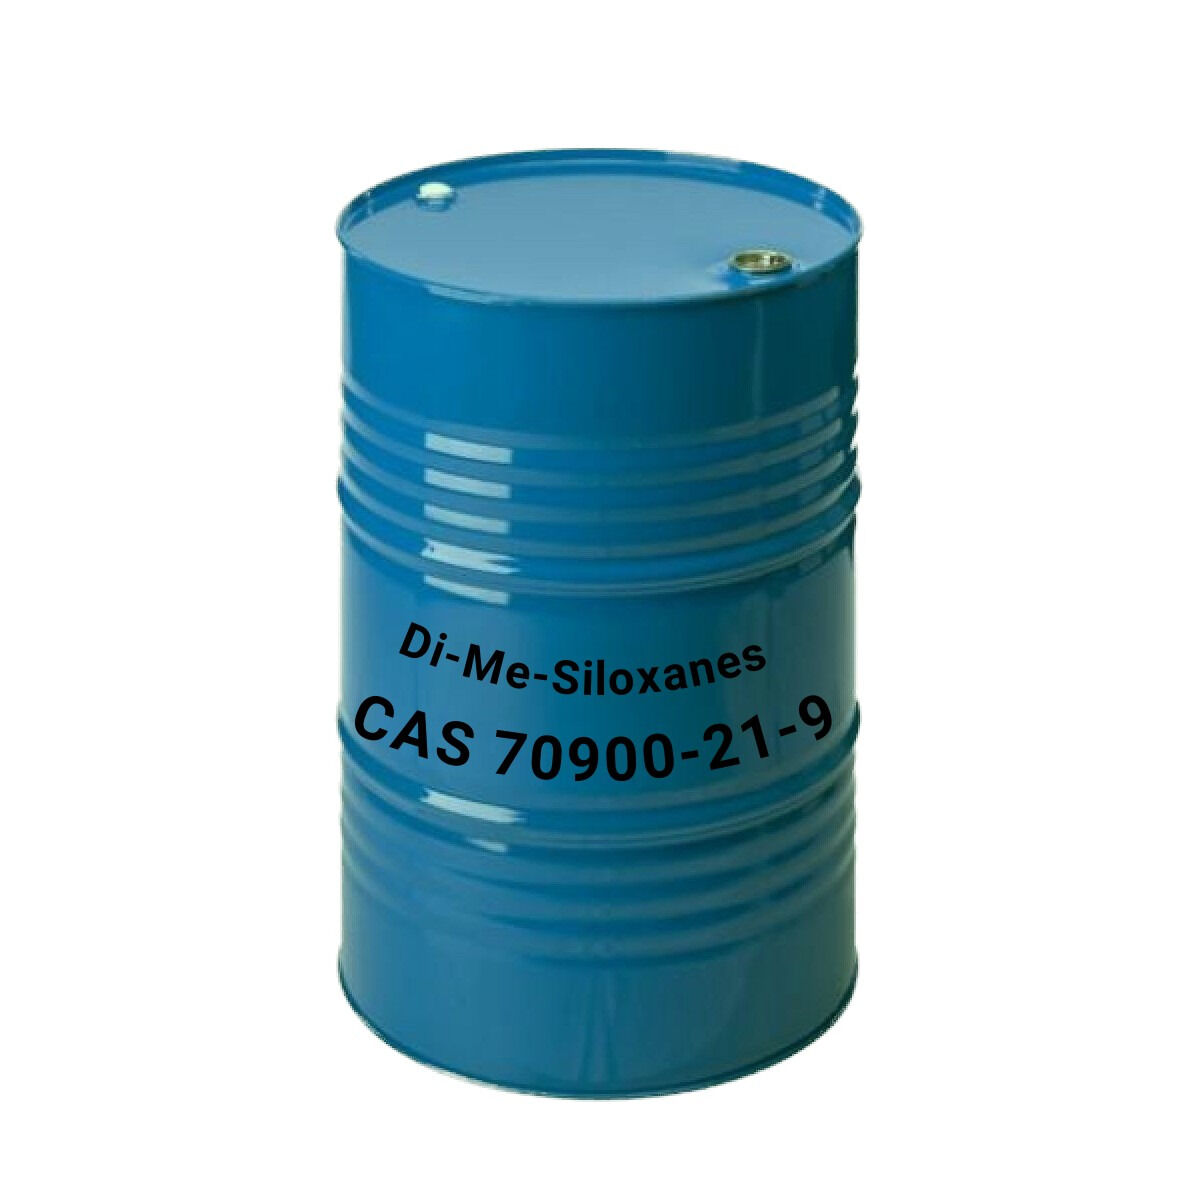 Полиметилсилоксан с ди-Мэ водородным концом CAS 70900-21-9